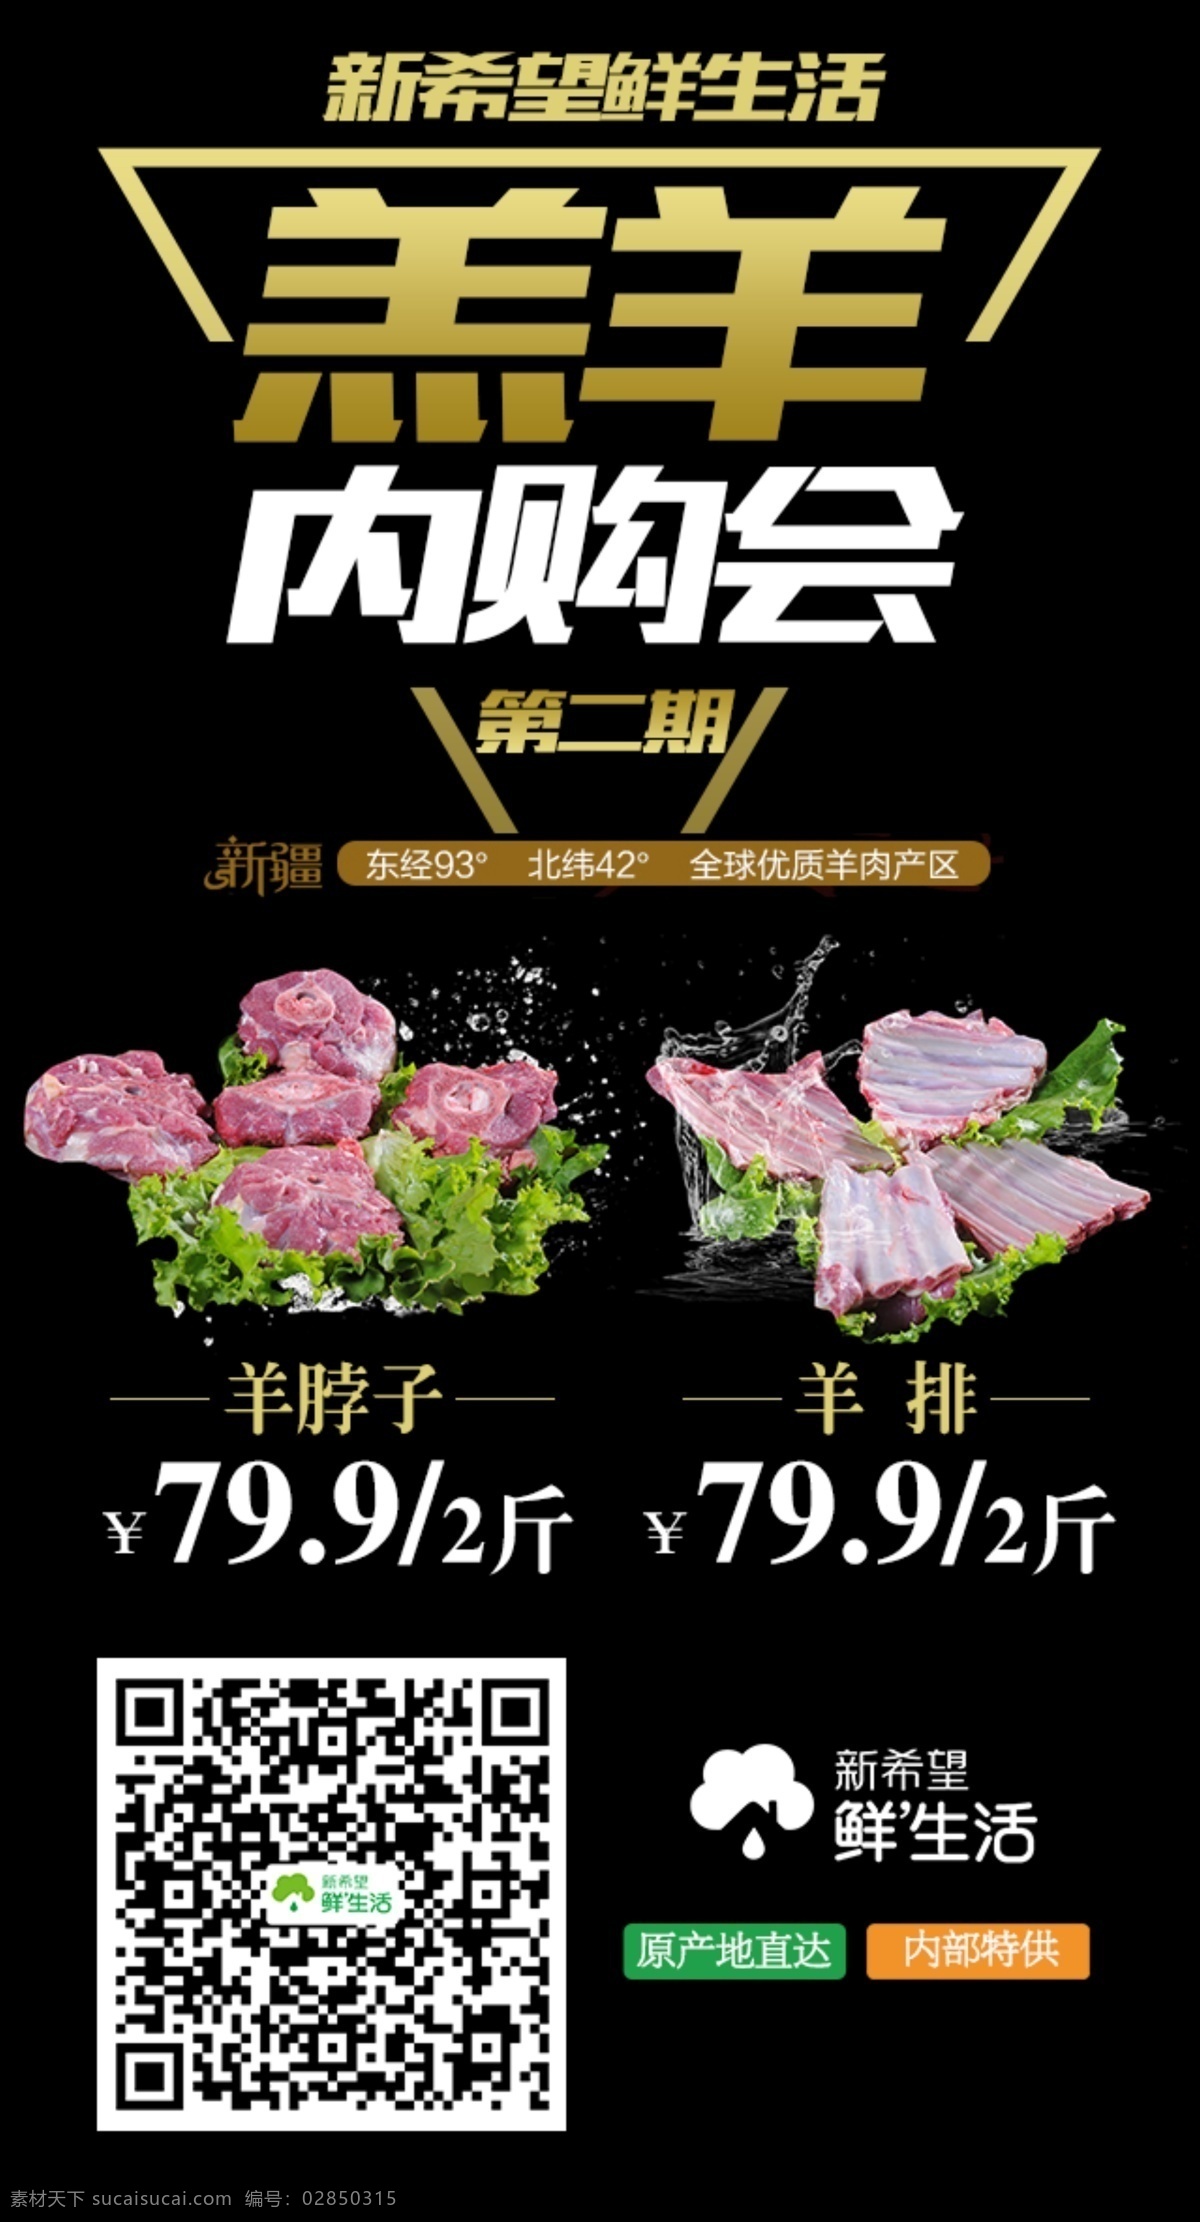 第二季内购会 羊肉内购会 内购会 羊肉 羊排 xinxiwangneigouhui 黑色